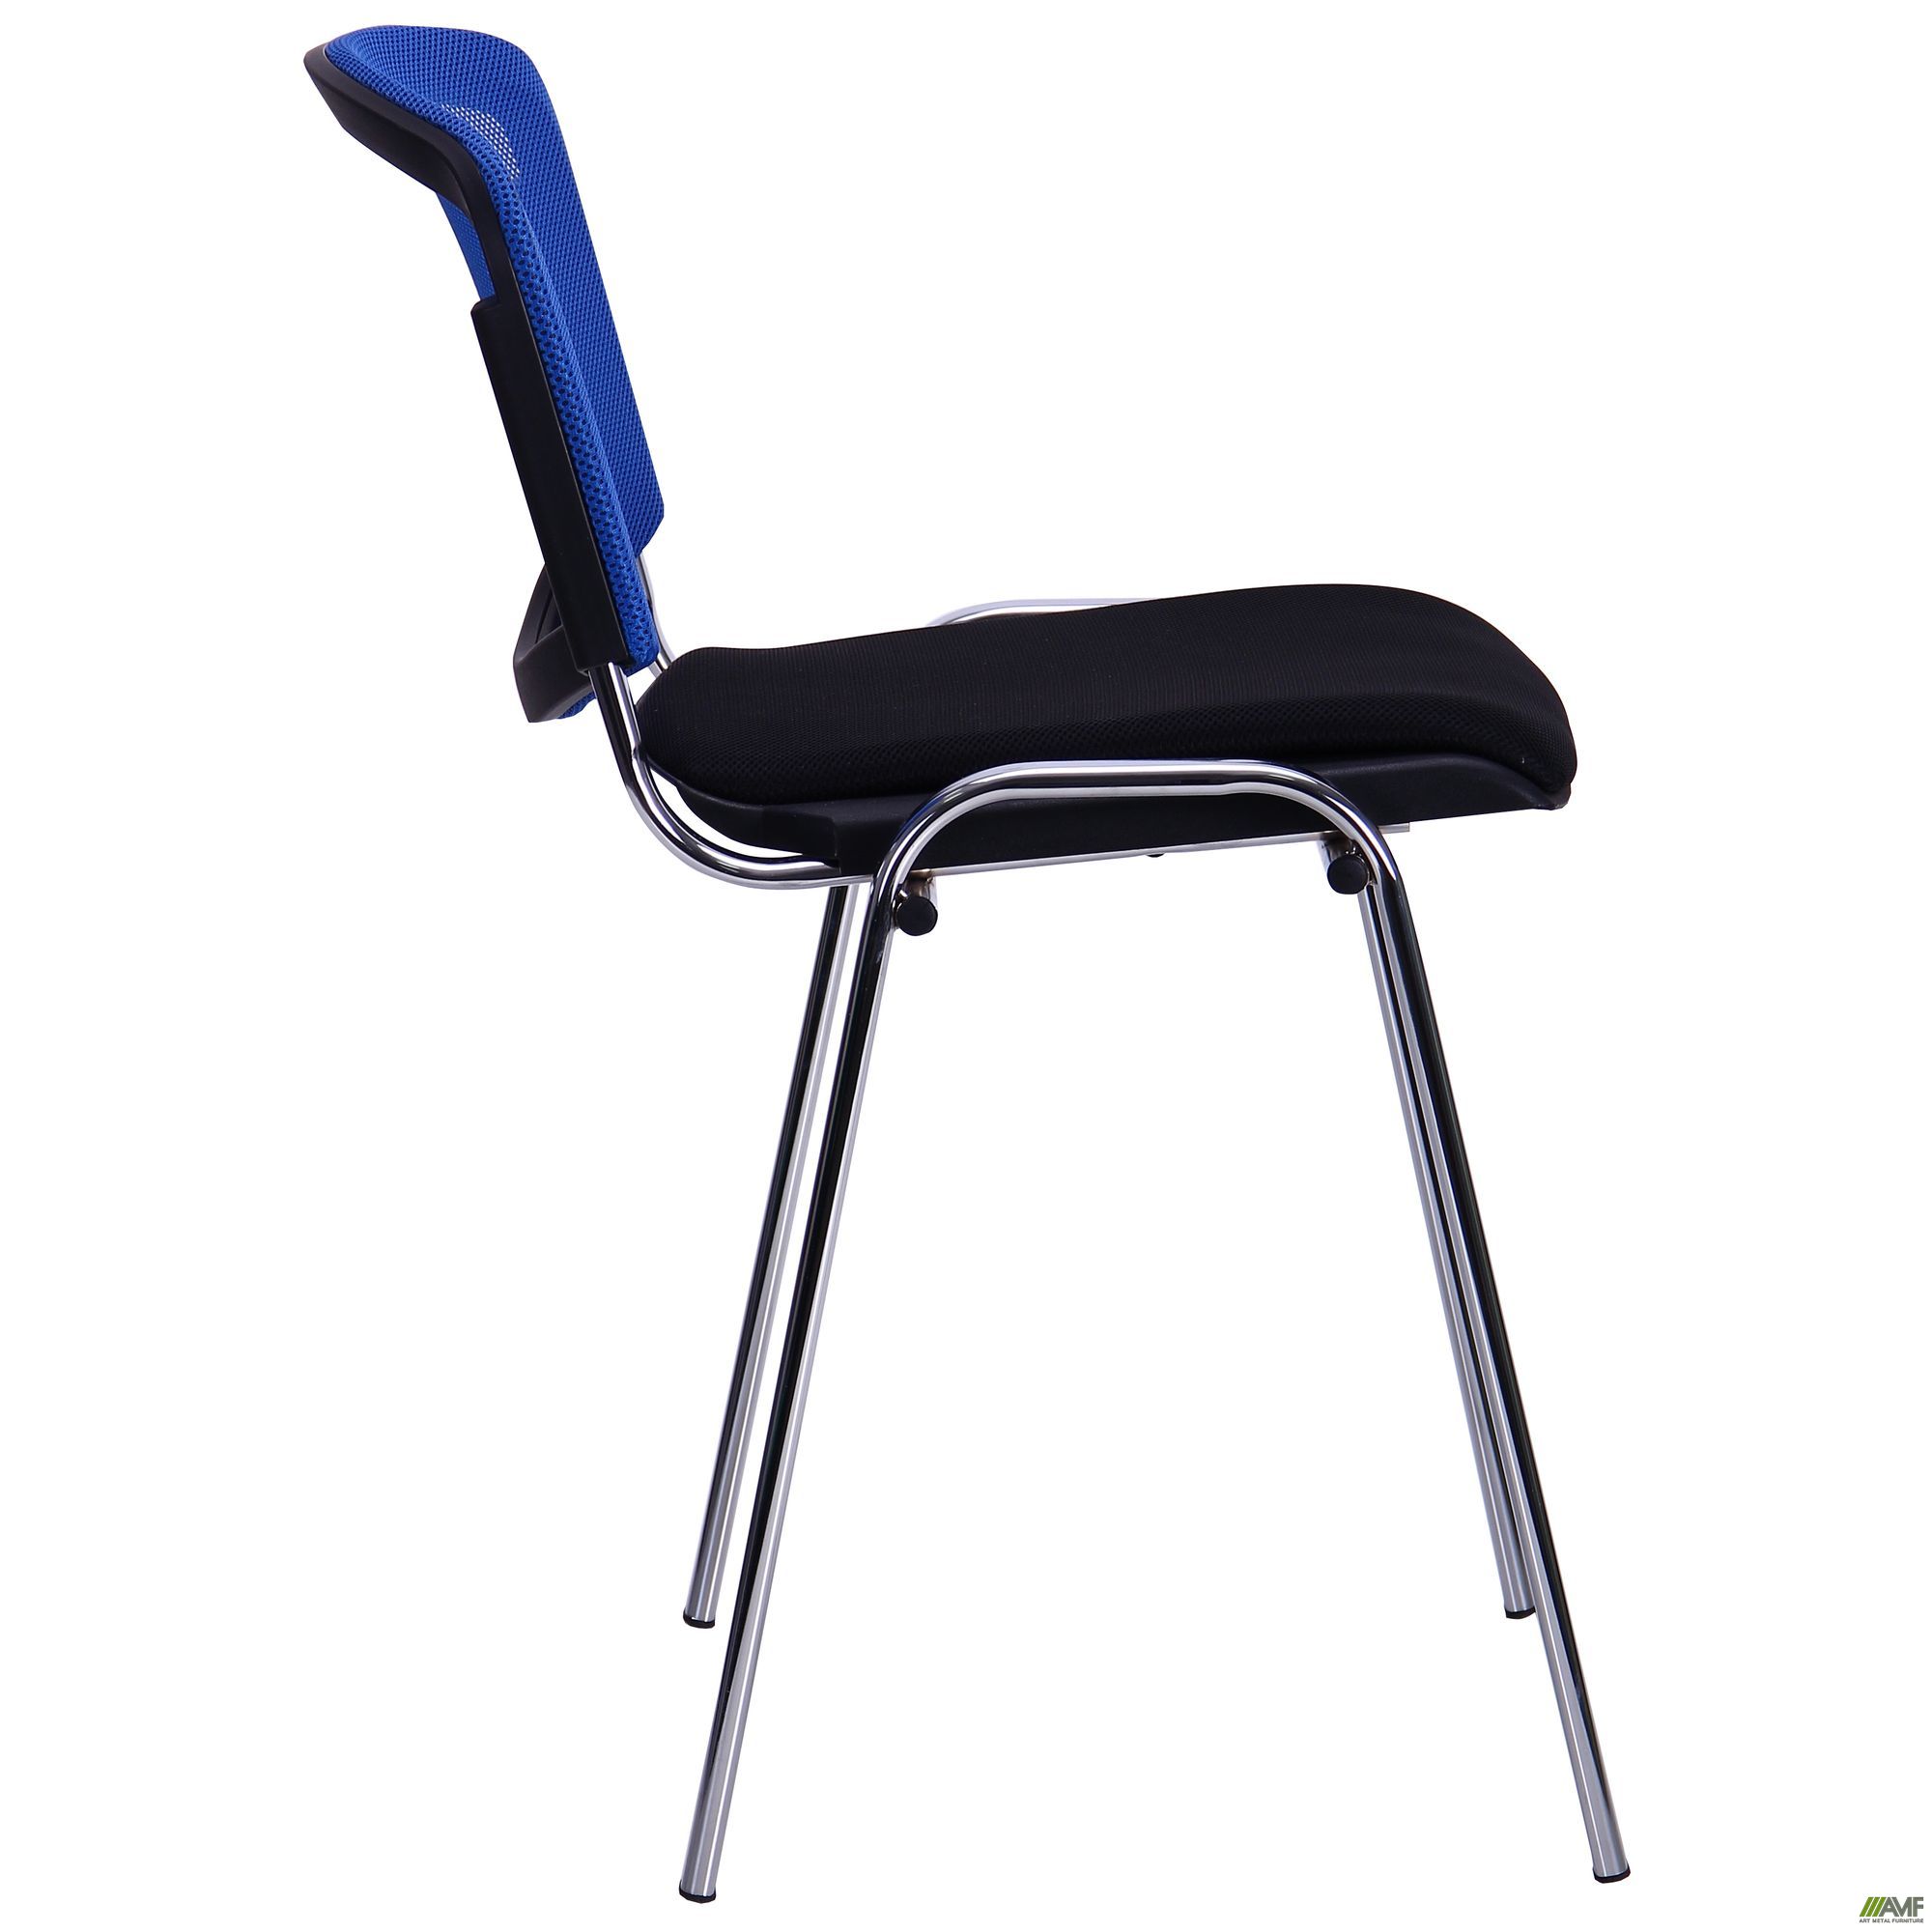 Фото 3 - Стул Призма Веб хром сиденье Сетка черная/спинка Сетка синяя 